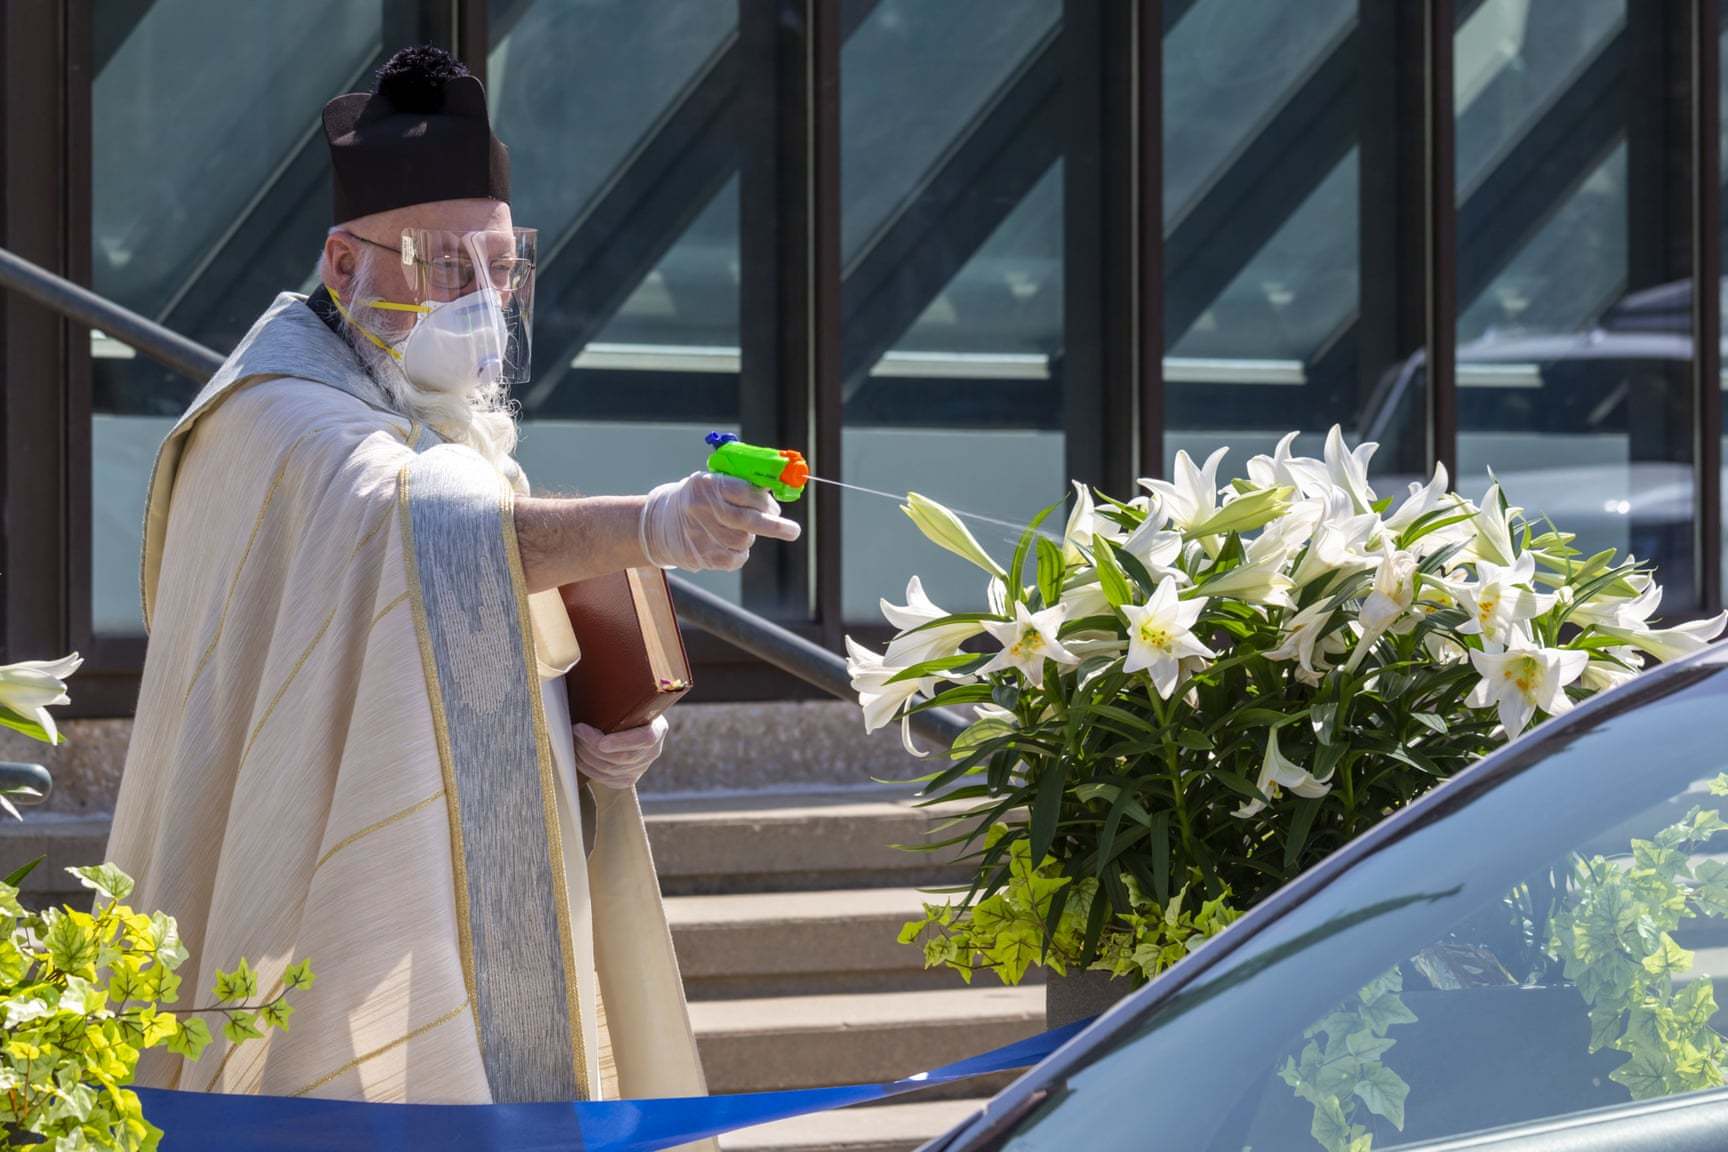 Не только безопасно, но и весело: священник освятил еду из водного пистолета